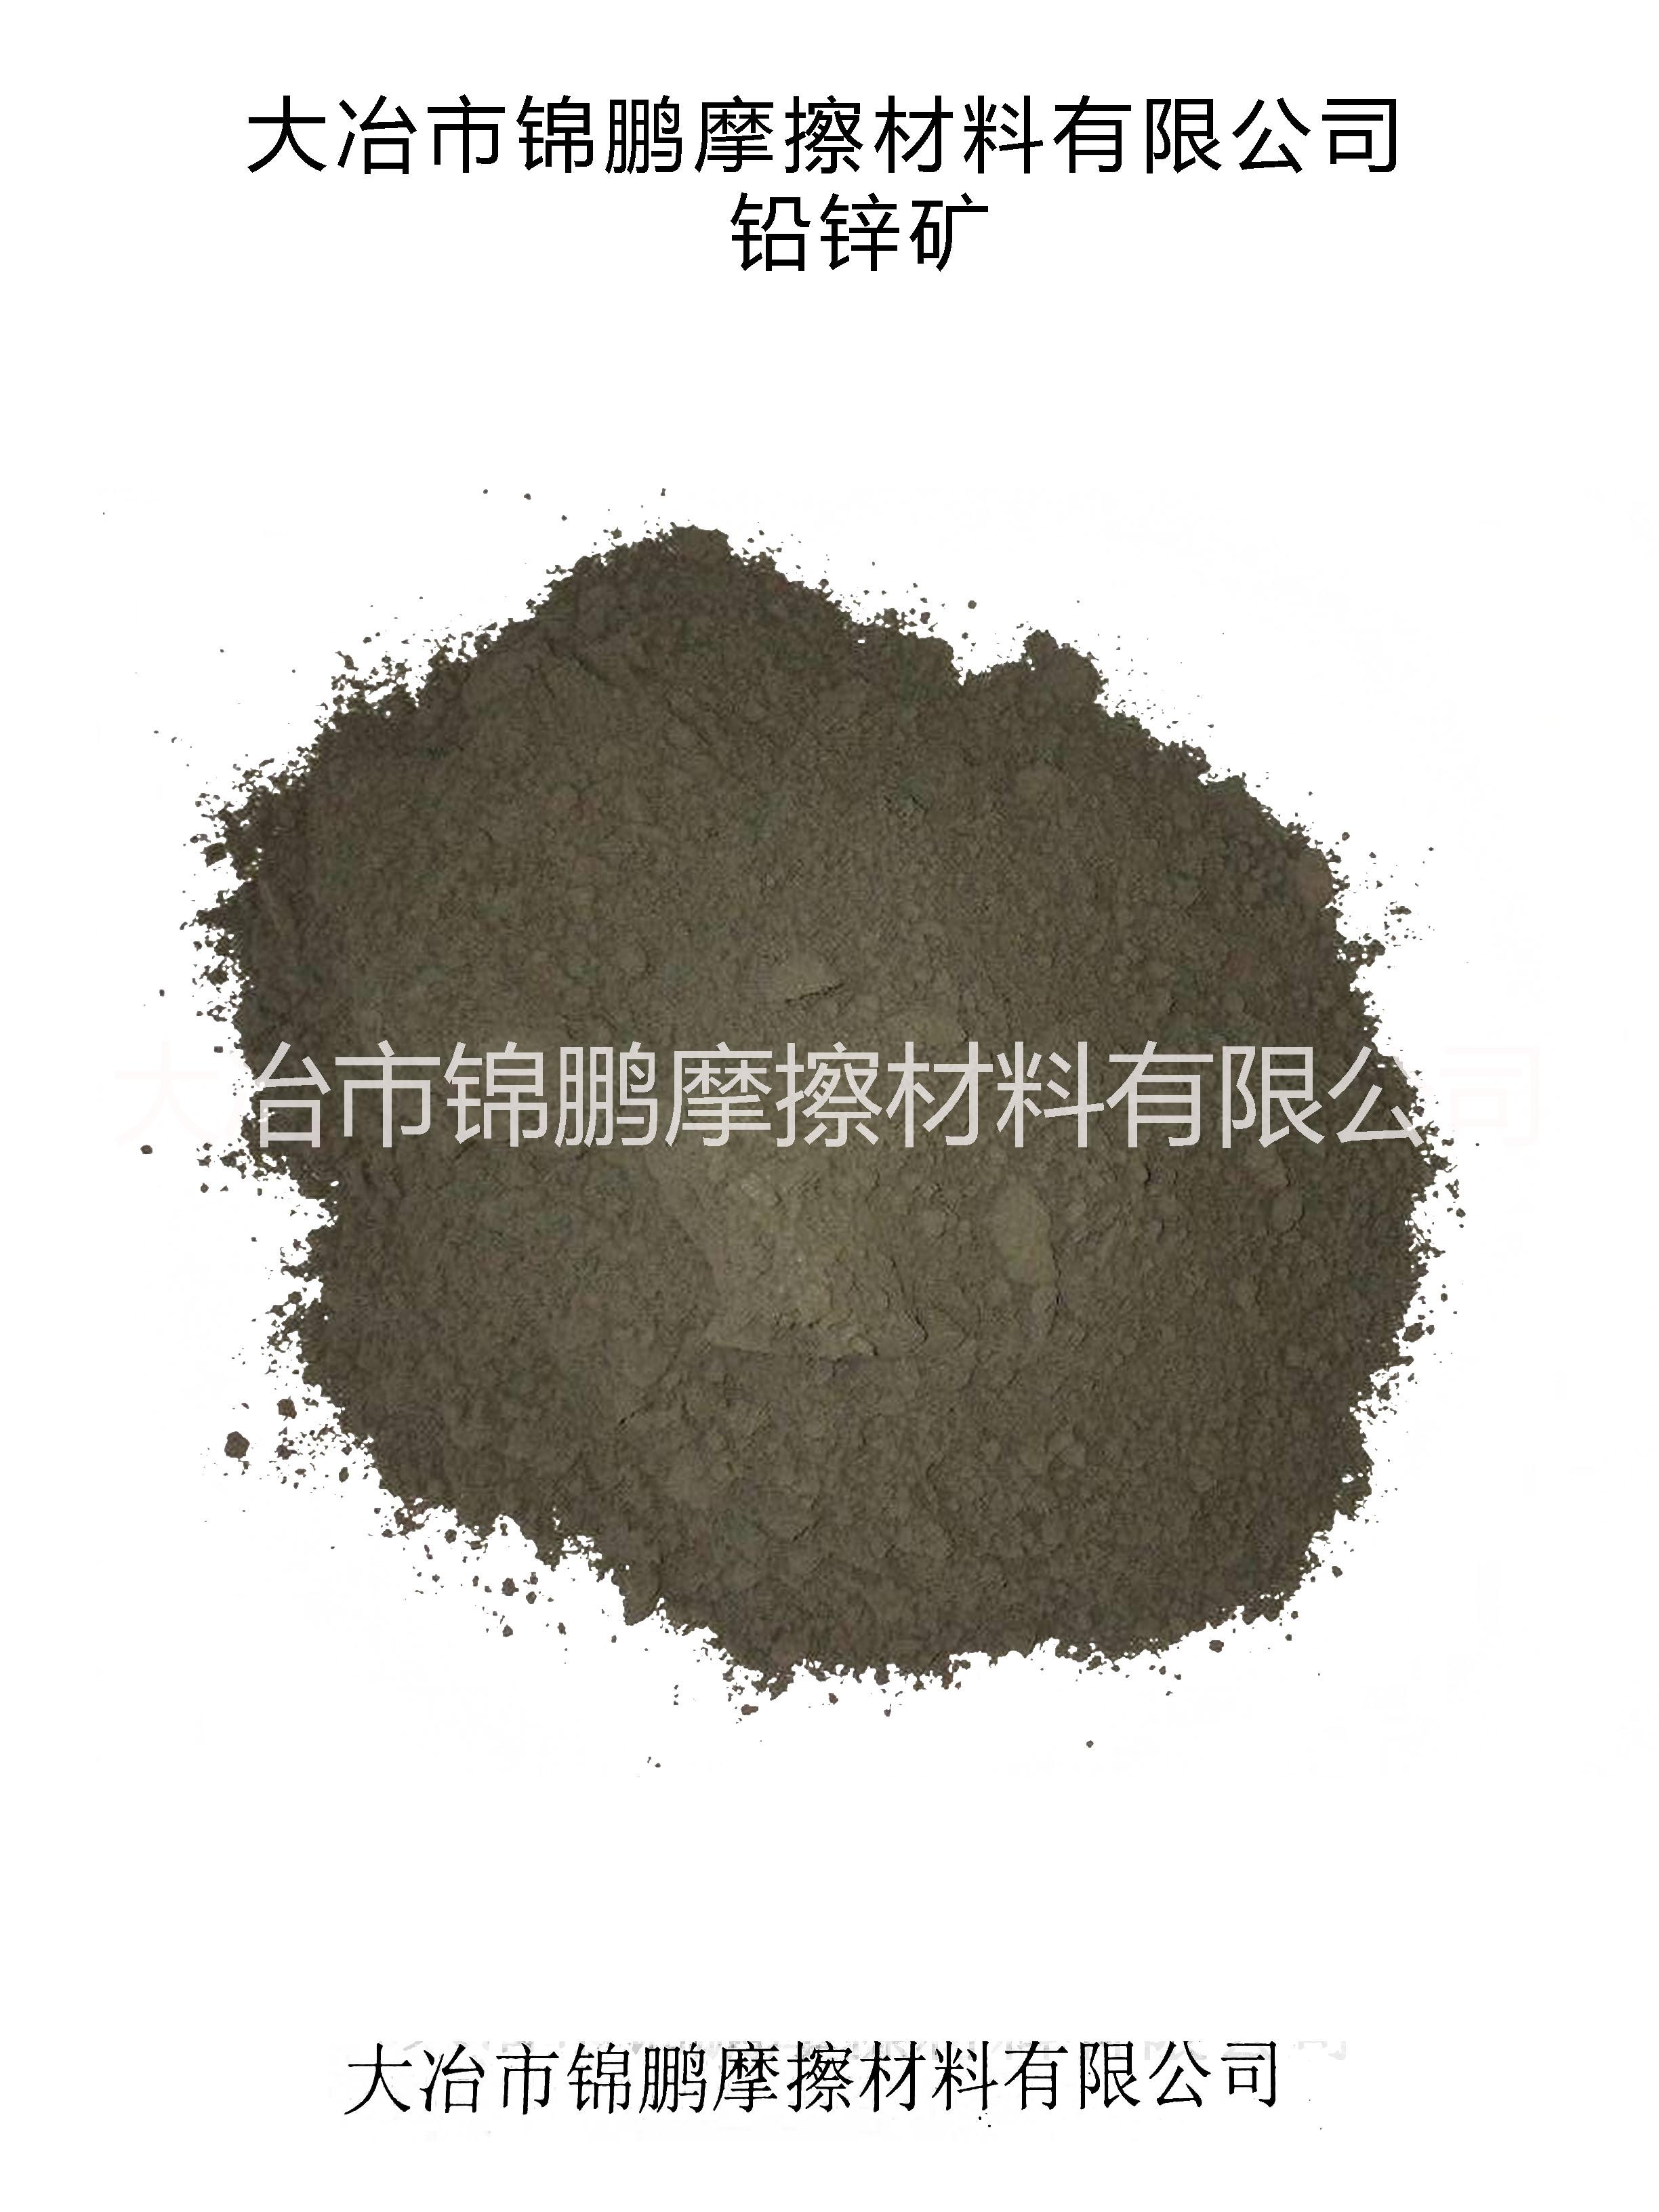 铅锌矿粉Lead-zinc ore powder